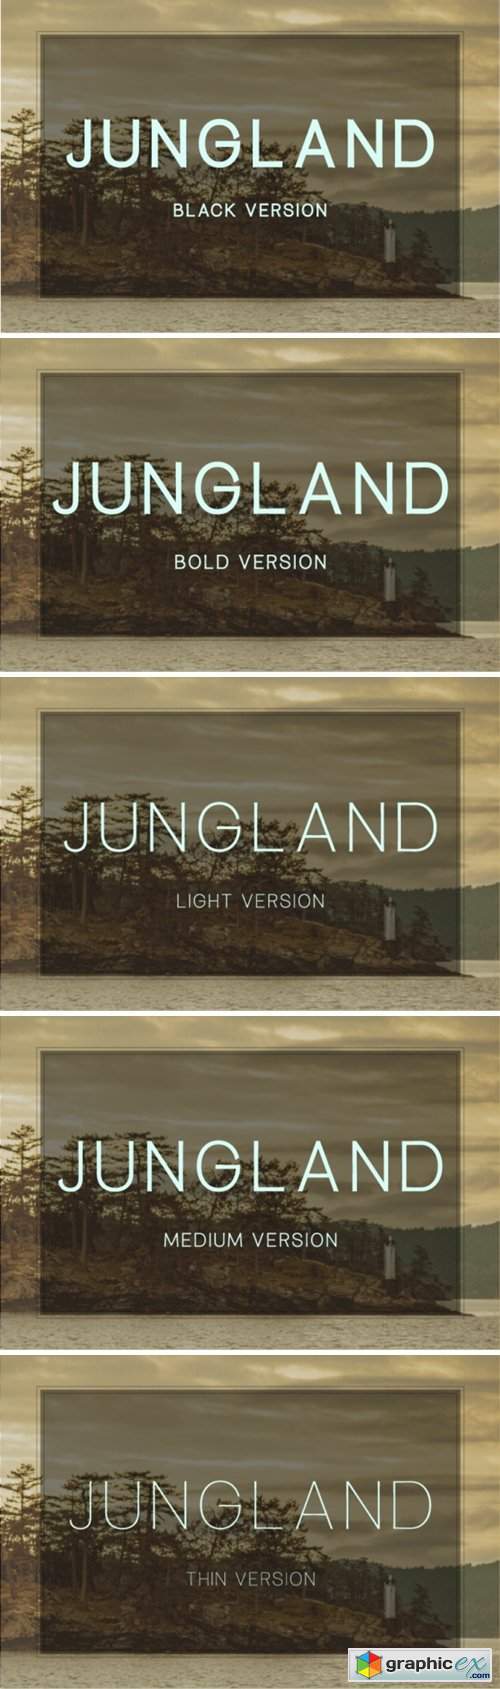 Jungland 5 Font